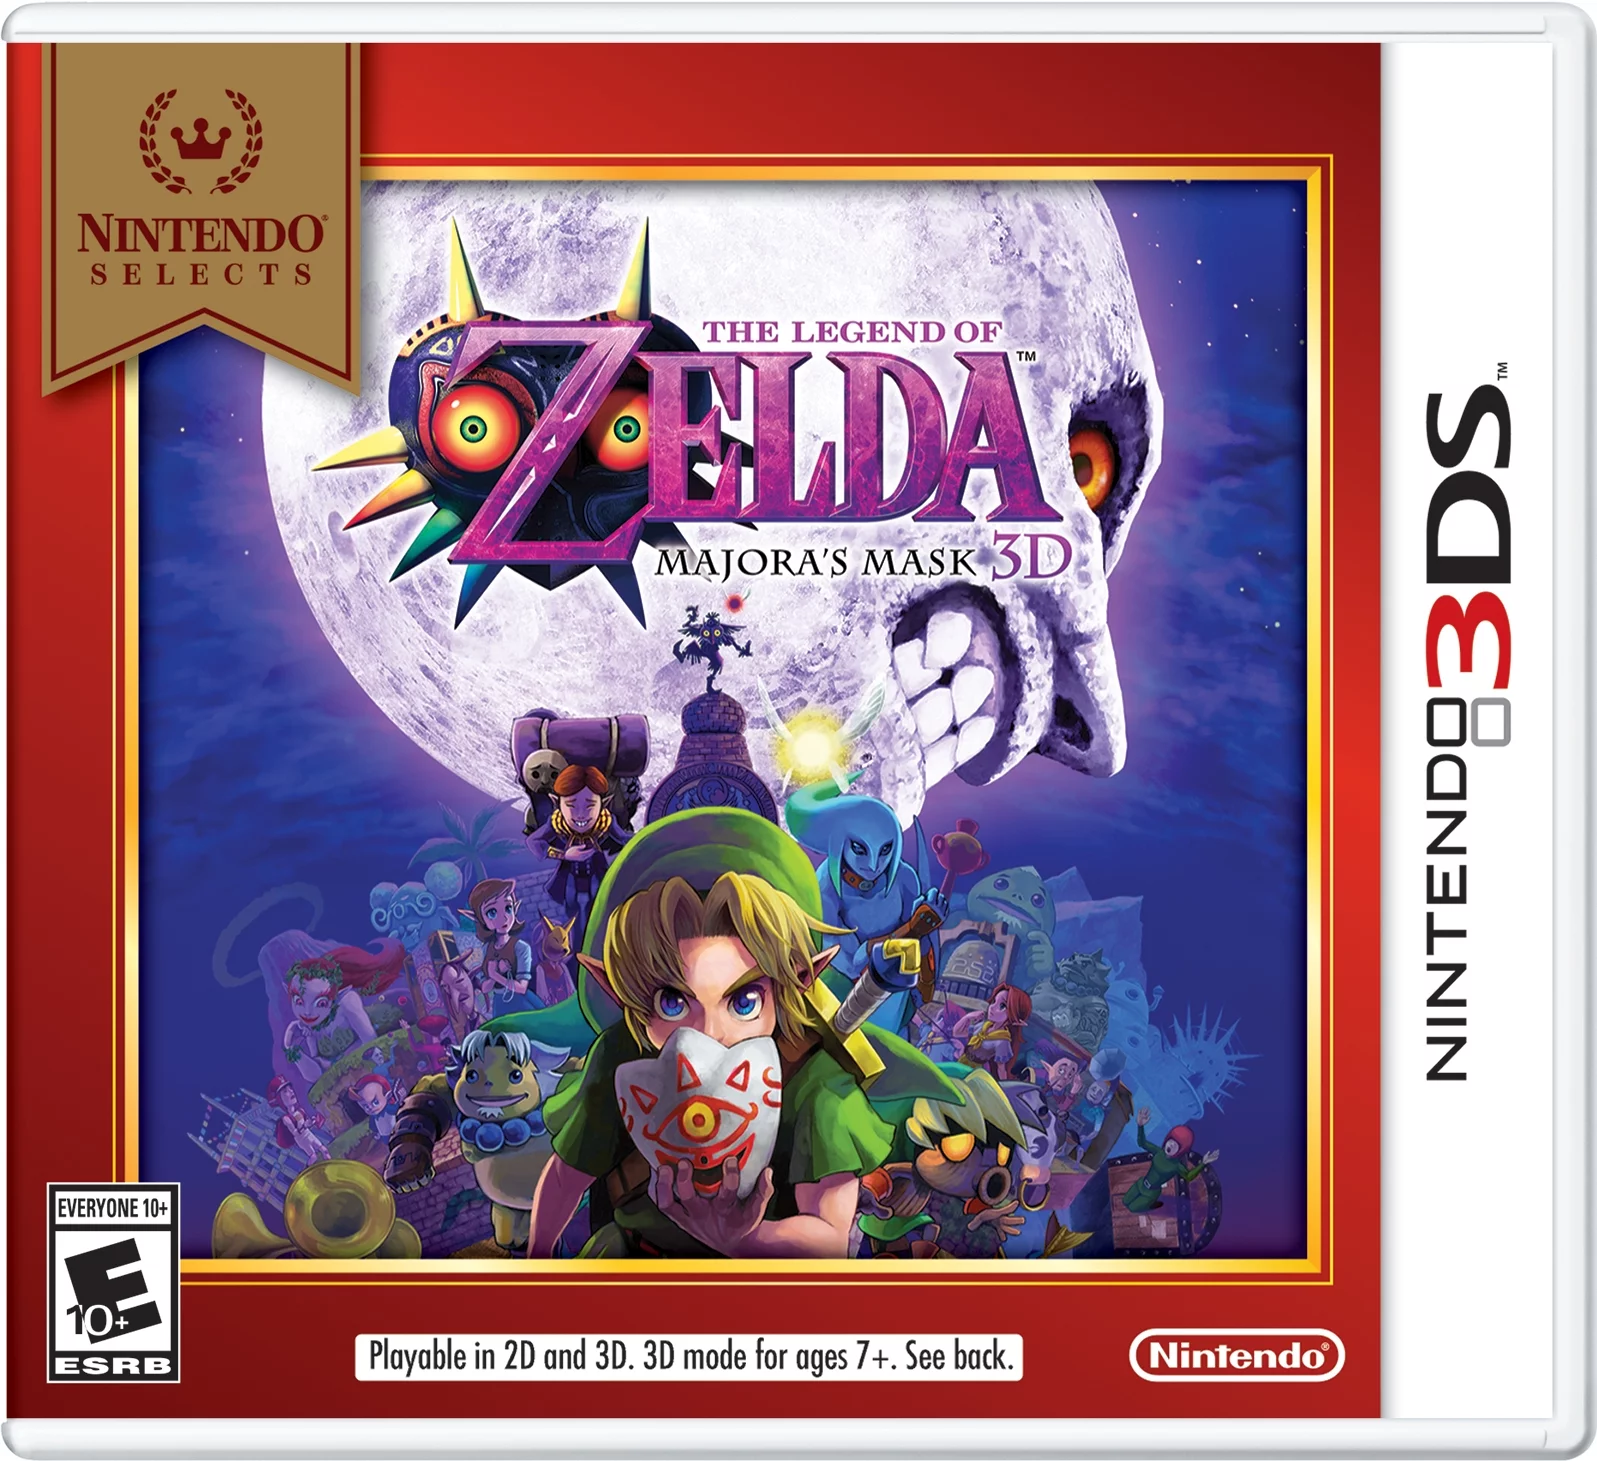 The Legend of Zelda: Majora's Mask, Nintendo 3DS, [Physical], 045496745189